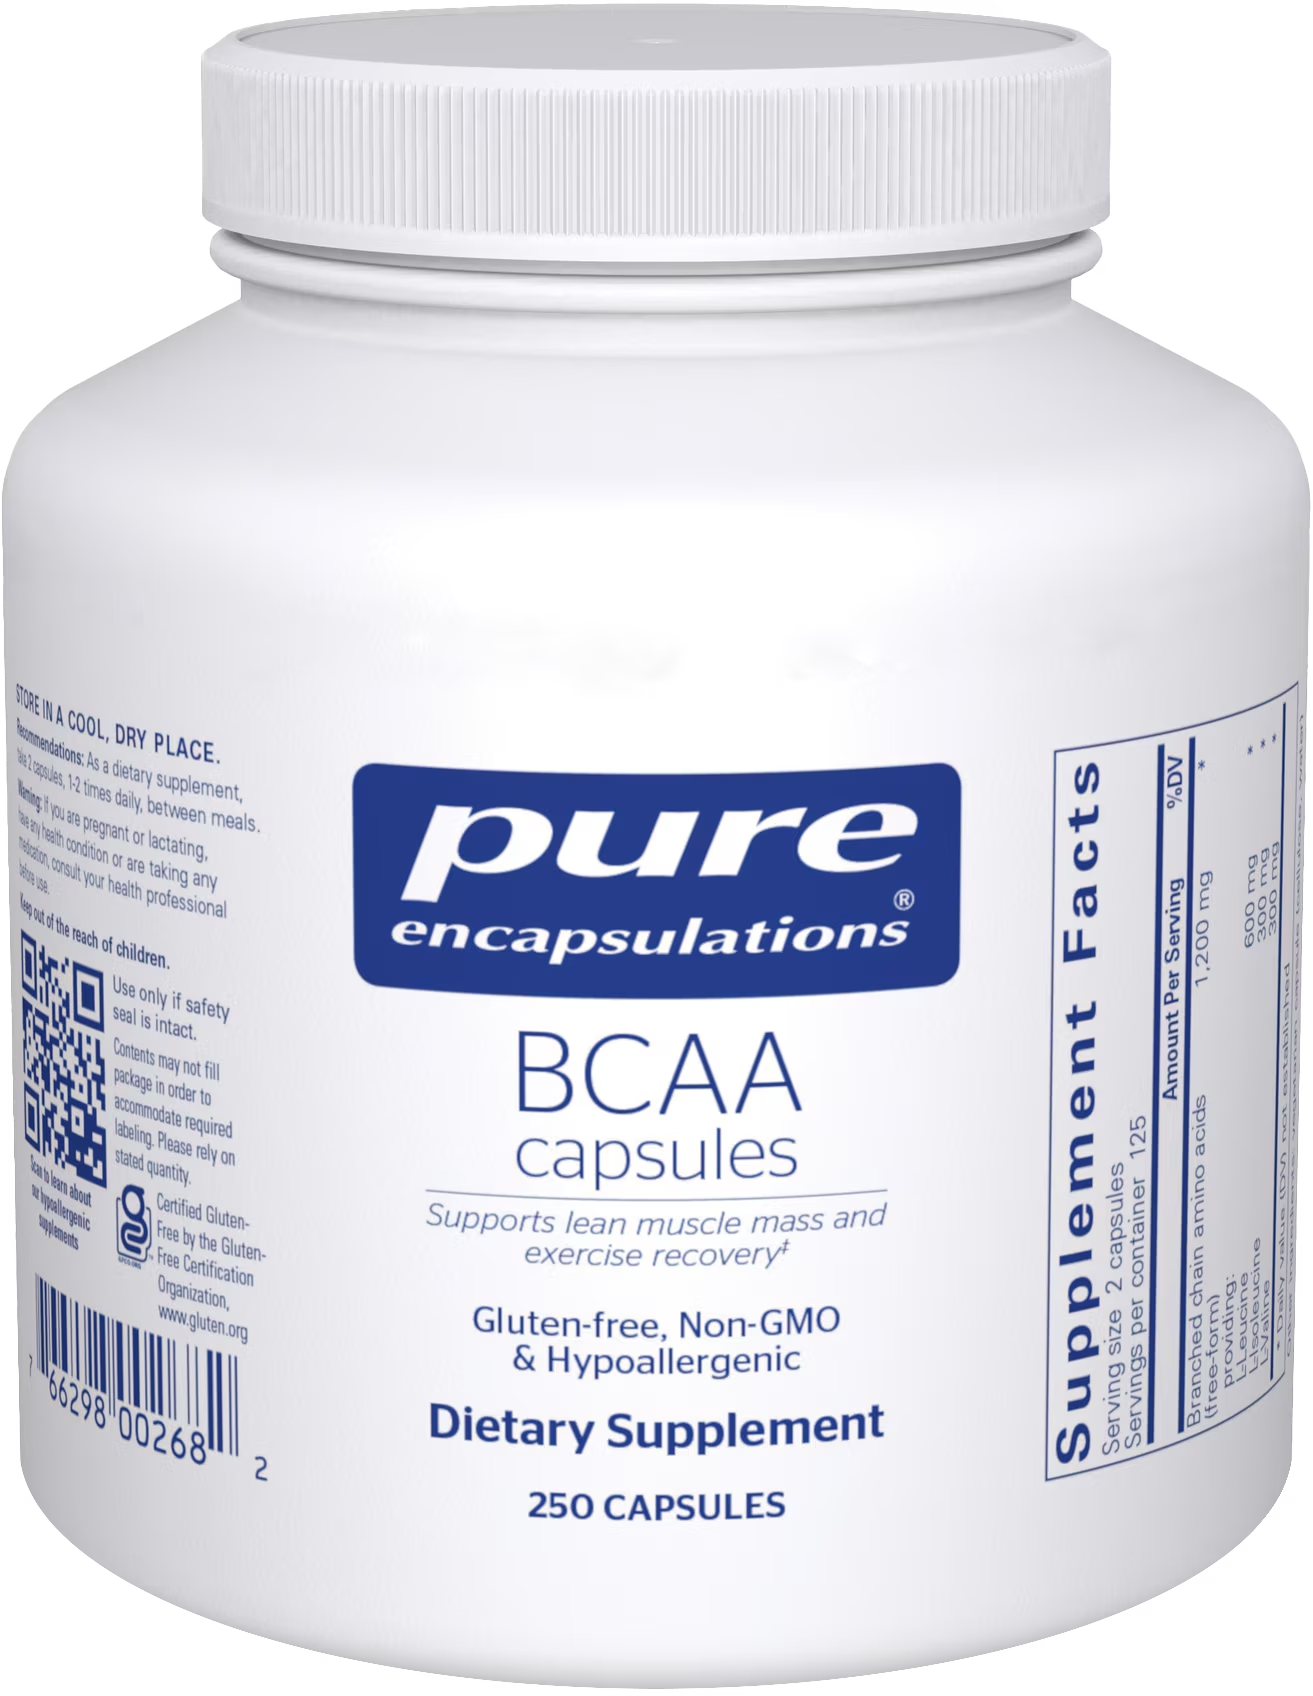 BCAA capsules 250 ct.